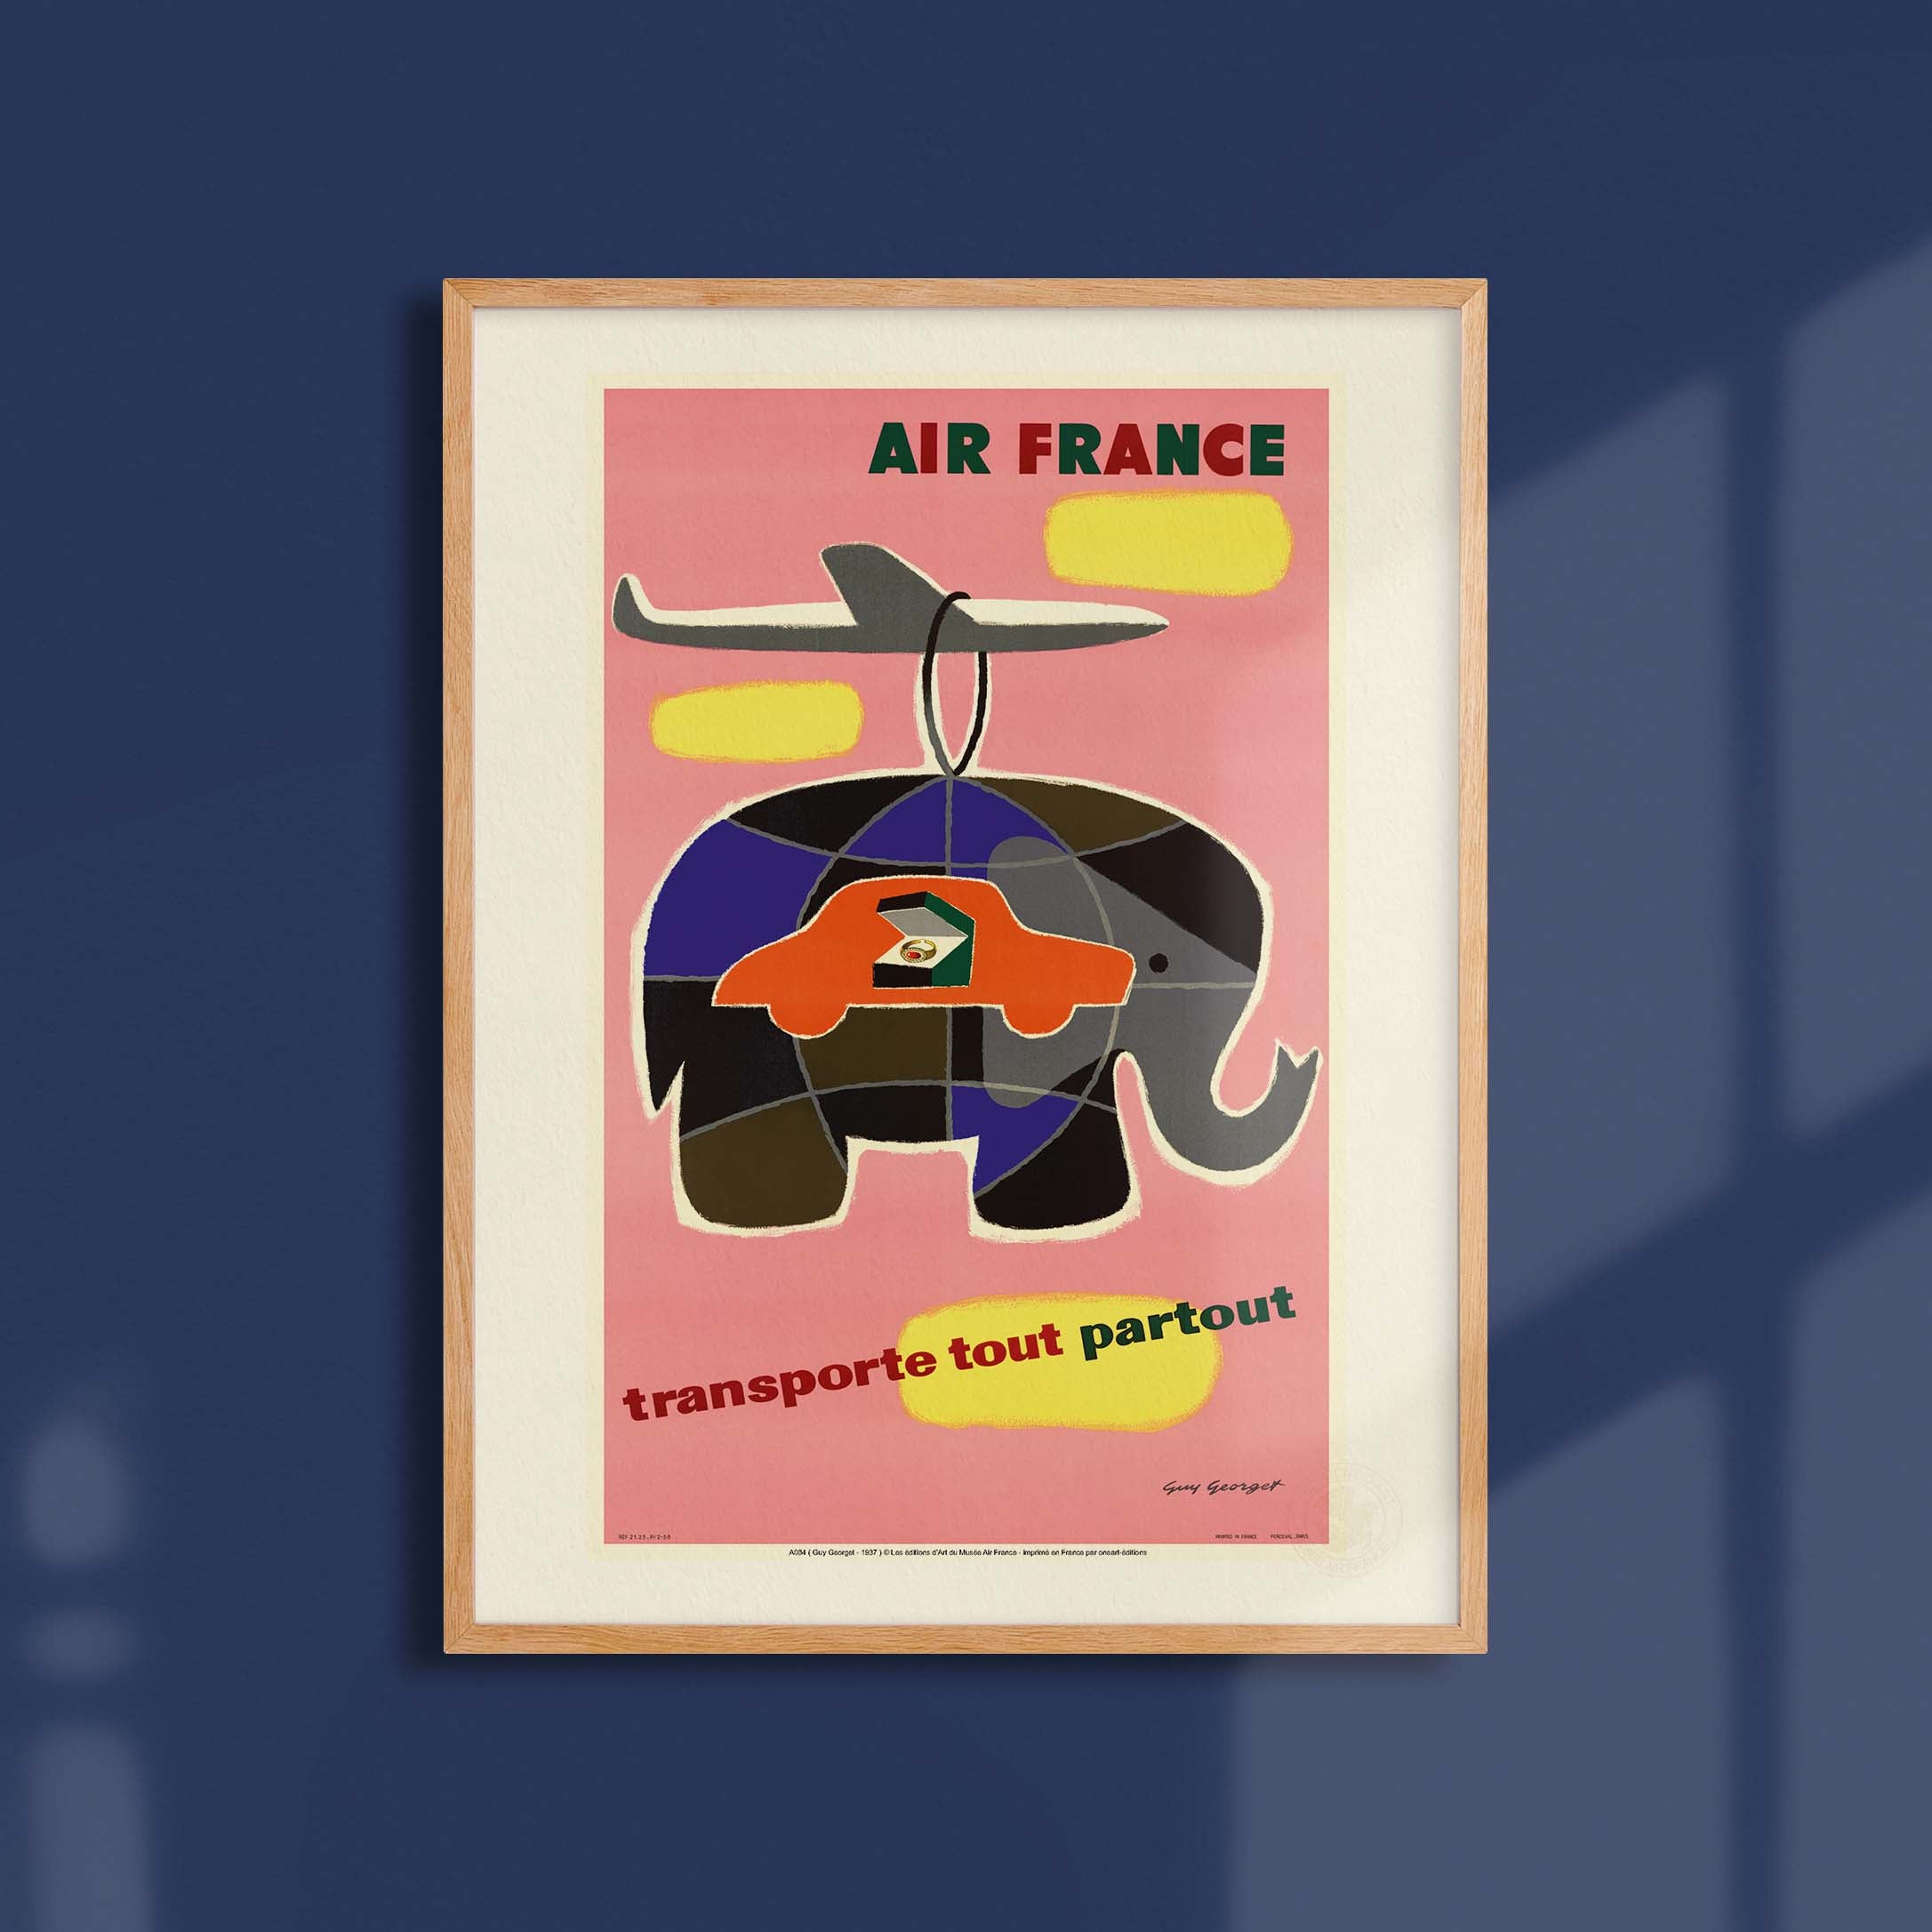 Affiche Air France - Transporte tout, partout-oneart.fr